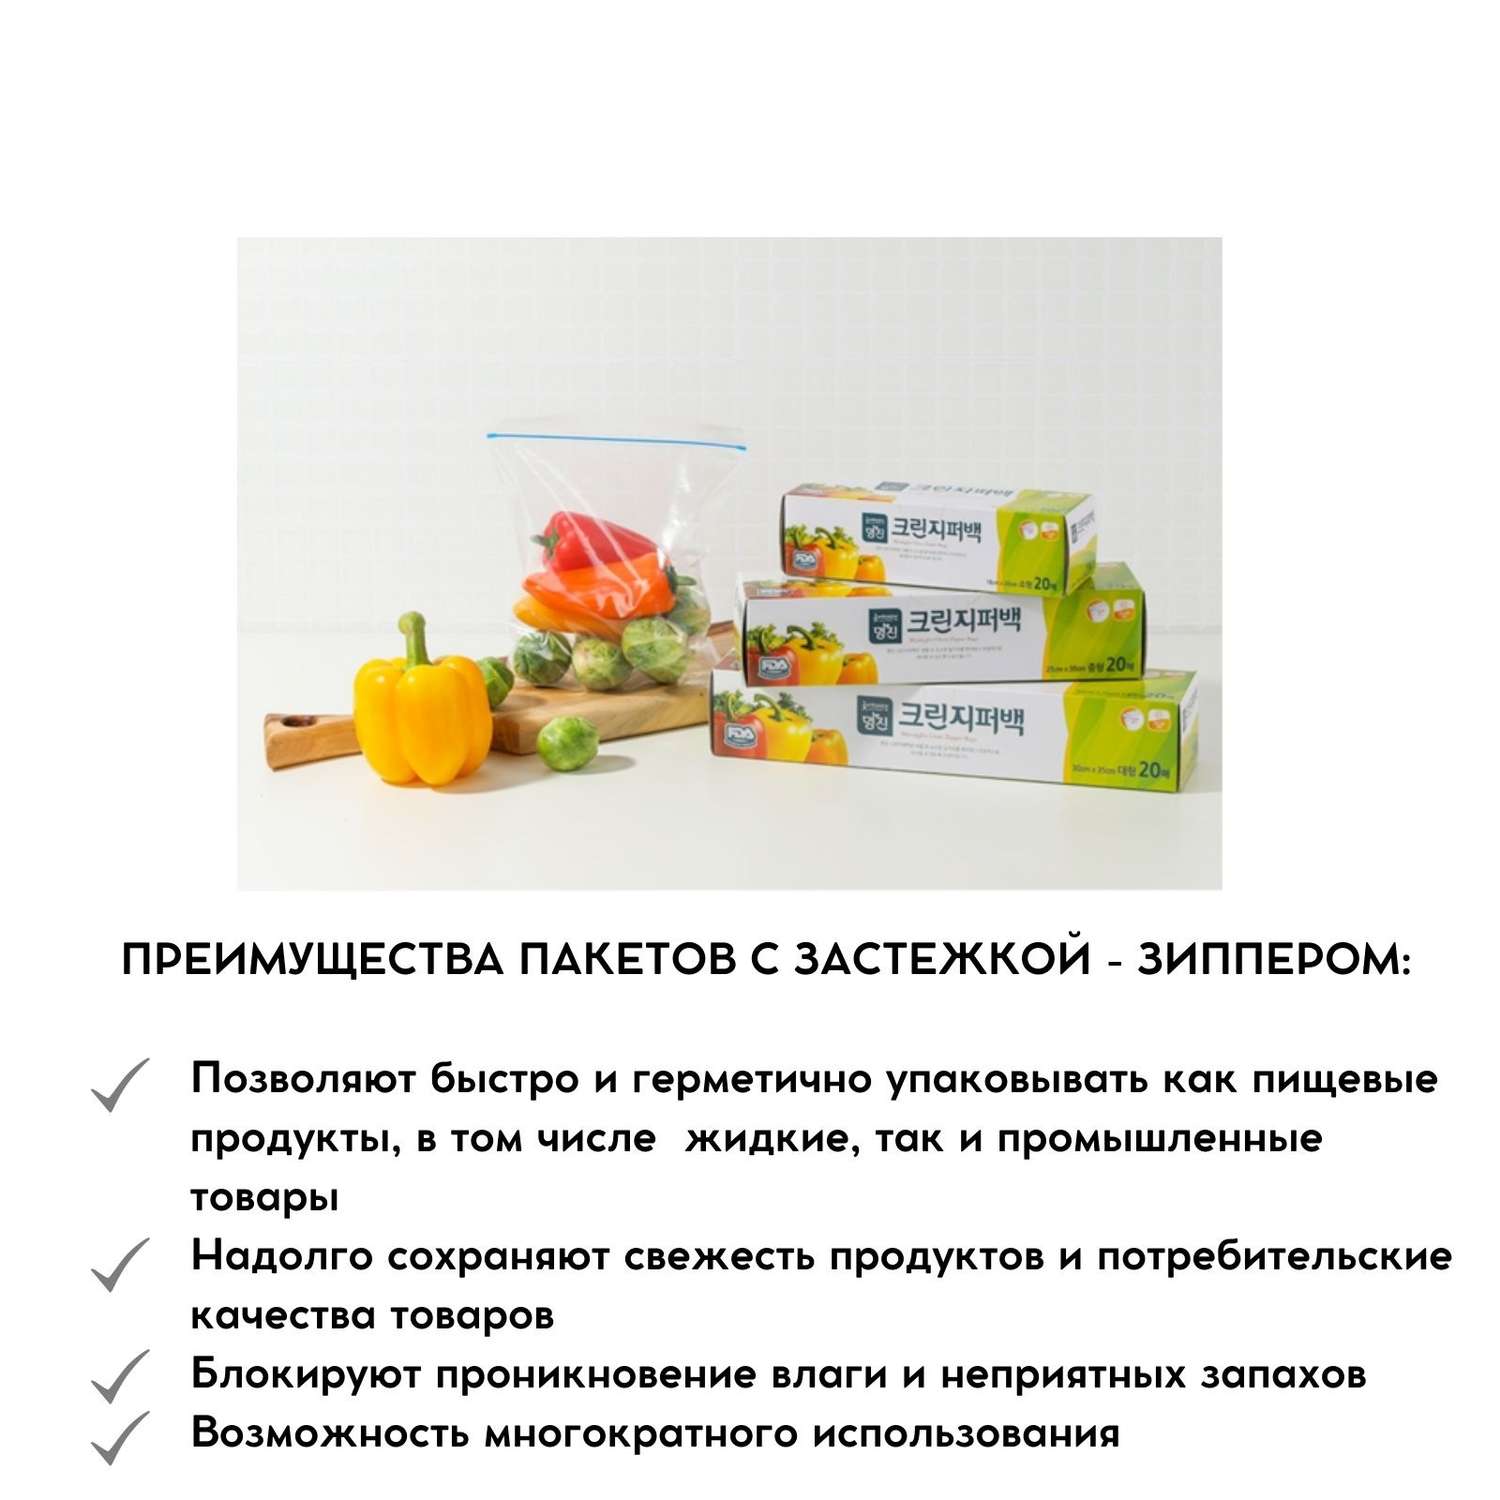 Пакеты полиэтиленовые пищевые HOME EDITION MYUNGJIN с застежкой – зиппером в коробке 25х30 см 20 шт - фото 5